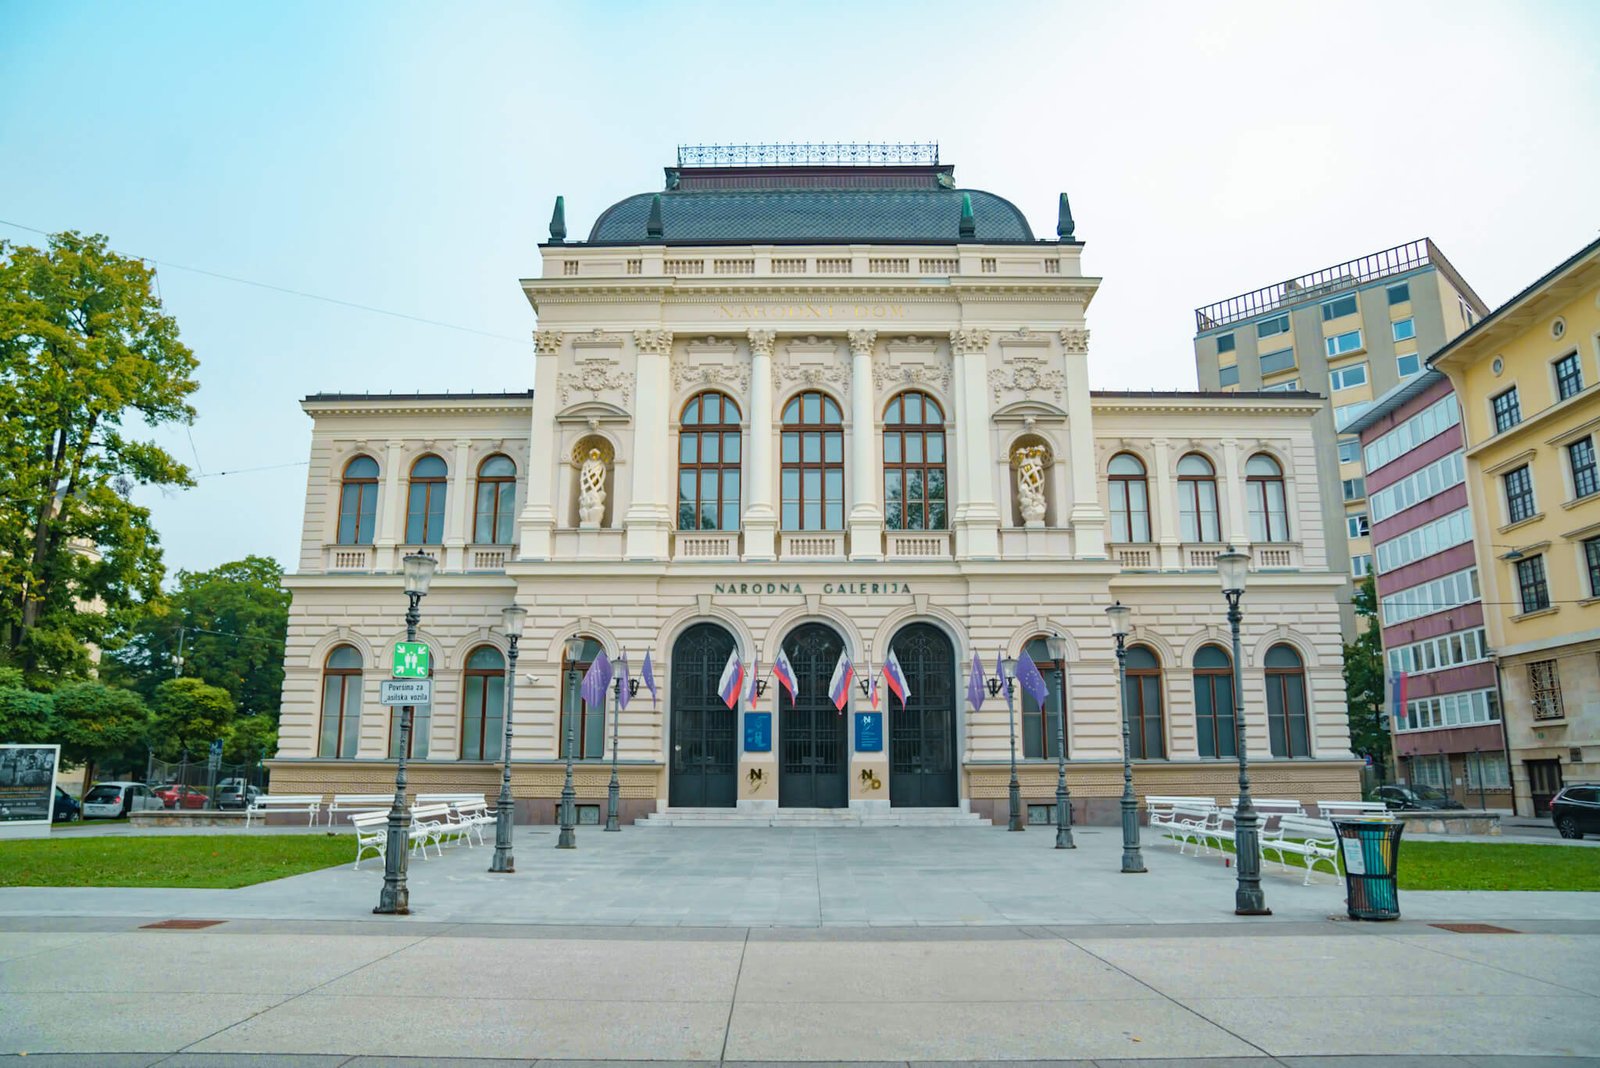 National gallery in Ljubljana